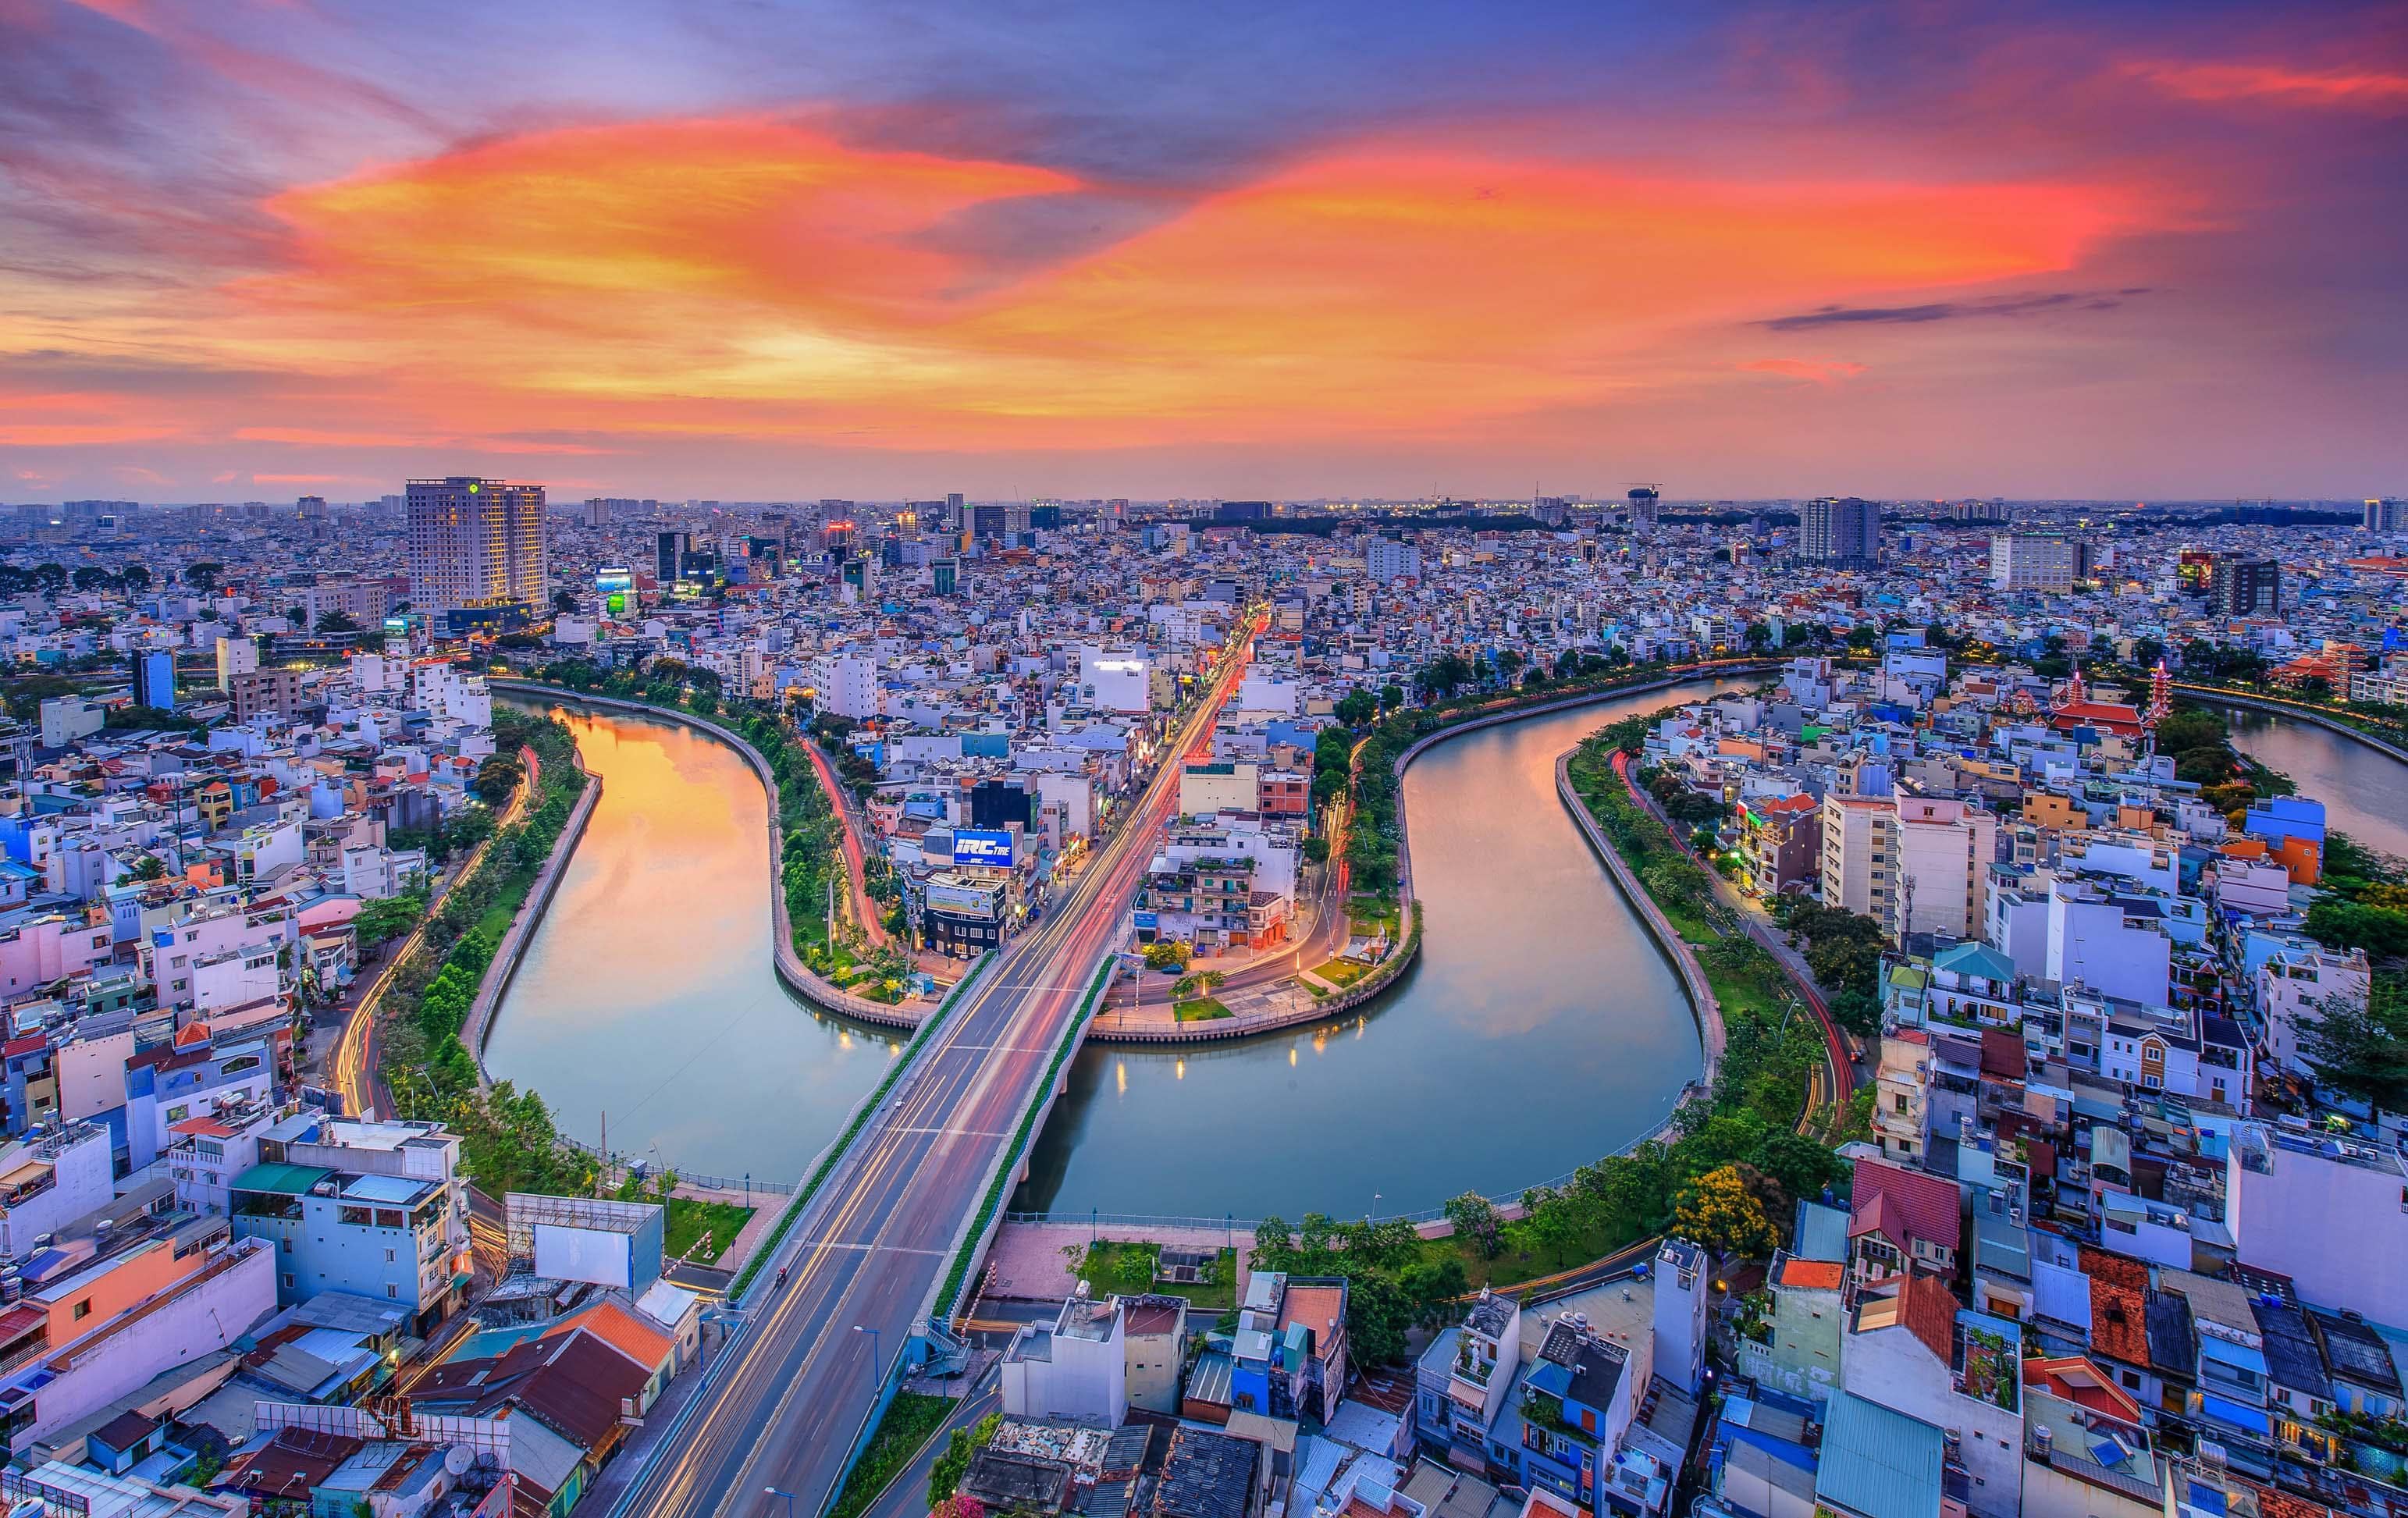 Một bức ảnh đẹp về Sài Gòn sẽ mang đến niềm vui và niềm tự hào cho bất kỳ ai yêu thích thành phố này. Bạn sẽ không bao giờ quên cảm giác ngắm nhìn Sài Gòn từ trên cao, từ một góc nhìn mới lạ. Hãy thưởng thức hình ảnh Sài Gòn tuyệt đẹp của chúng tôi và cảm nhận sự tràn đầy năng lượng của thành phố này.